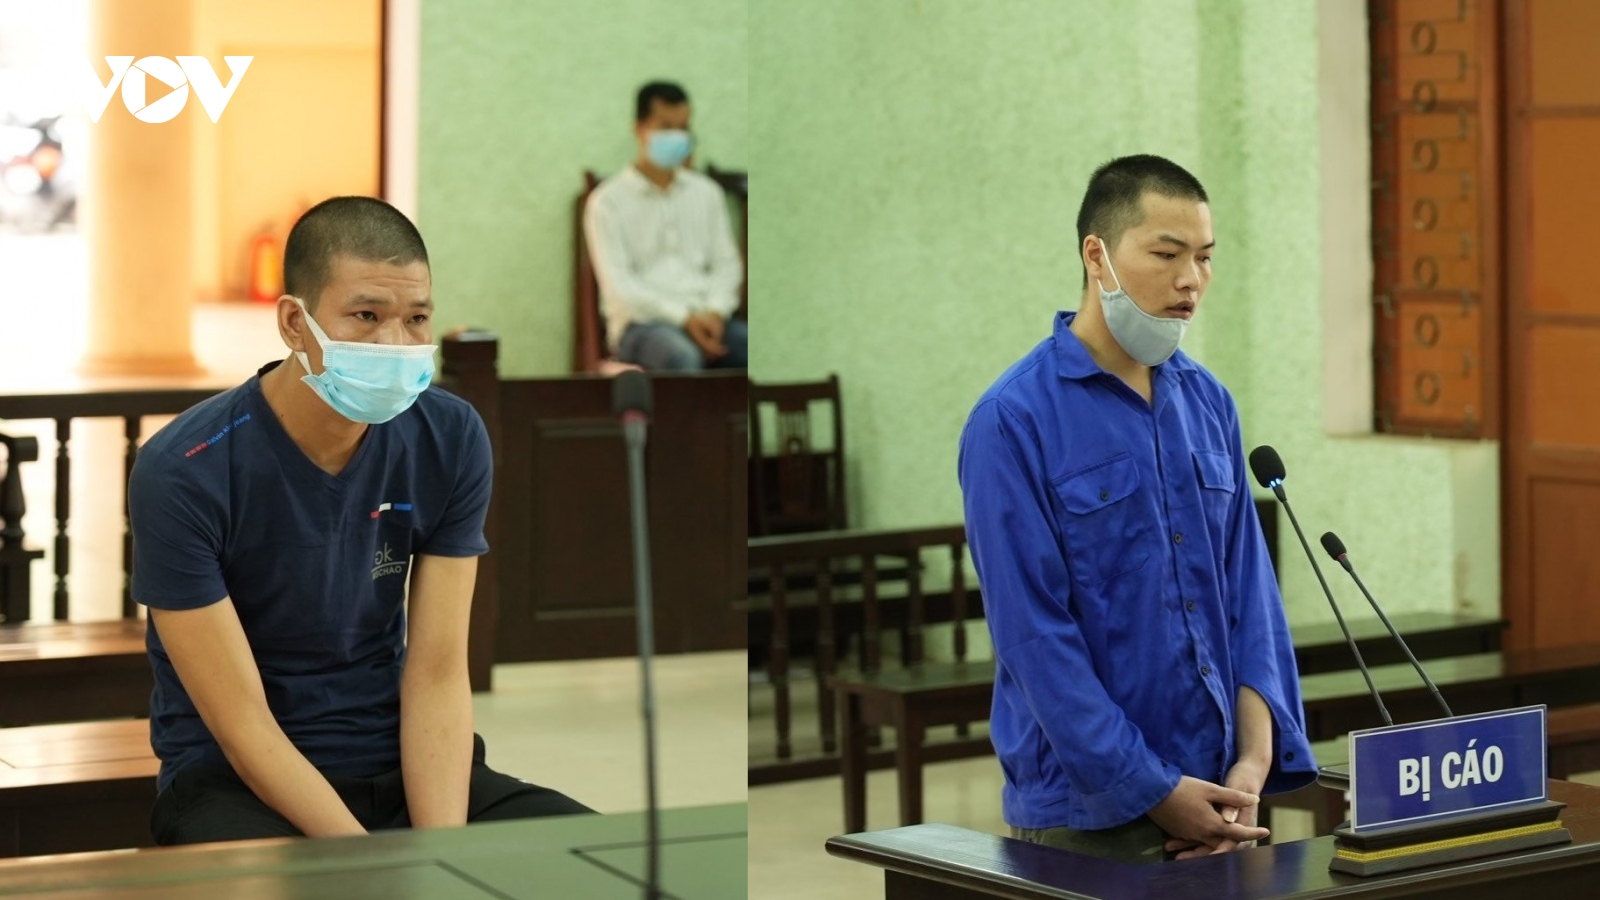 Đưa người Trung Quốc nhập cảnh trái phép, 2 thanh niên lĩnh án 33 tháng tù giam